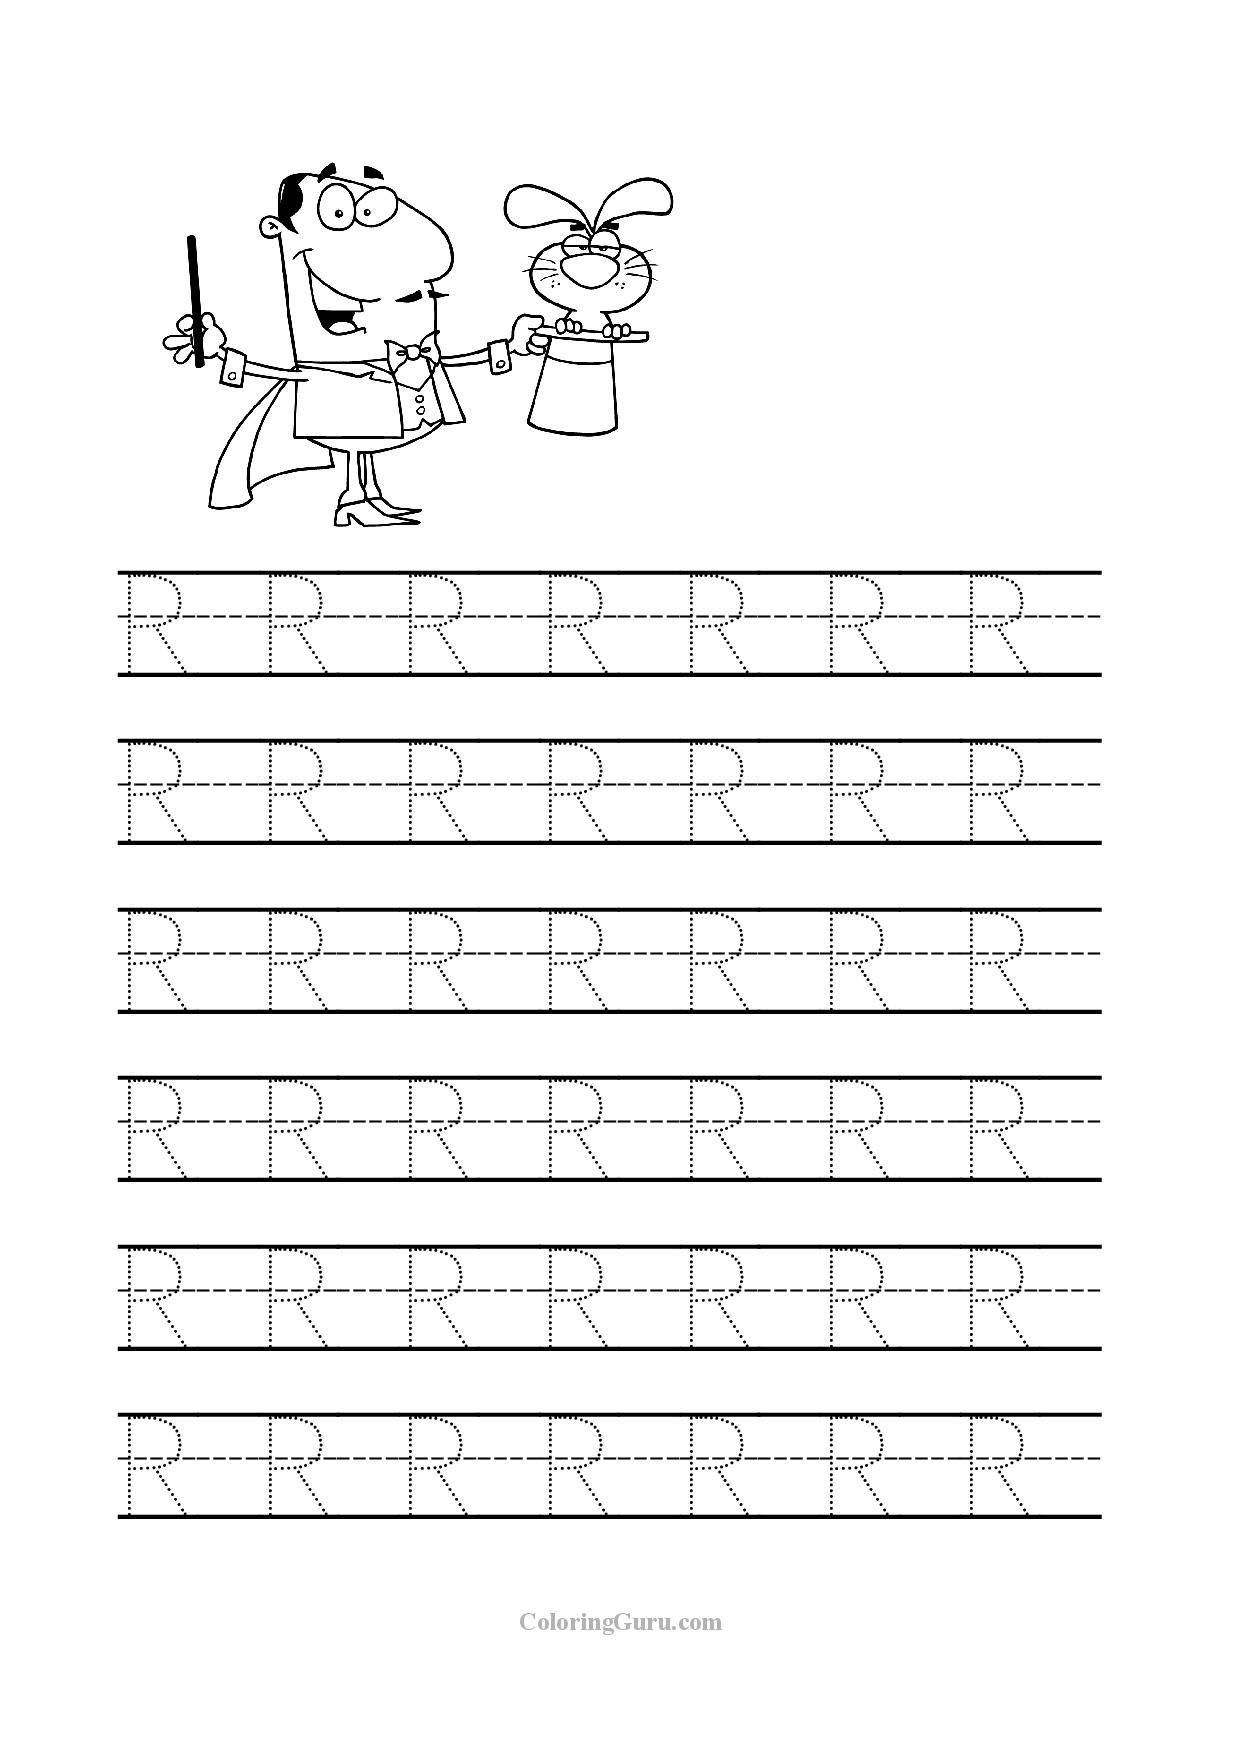 51 Grade R Alphabet Worksheets In 2020 | Letter Worksheets regarding R Letter Tracing